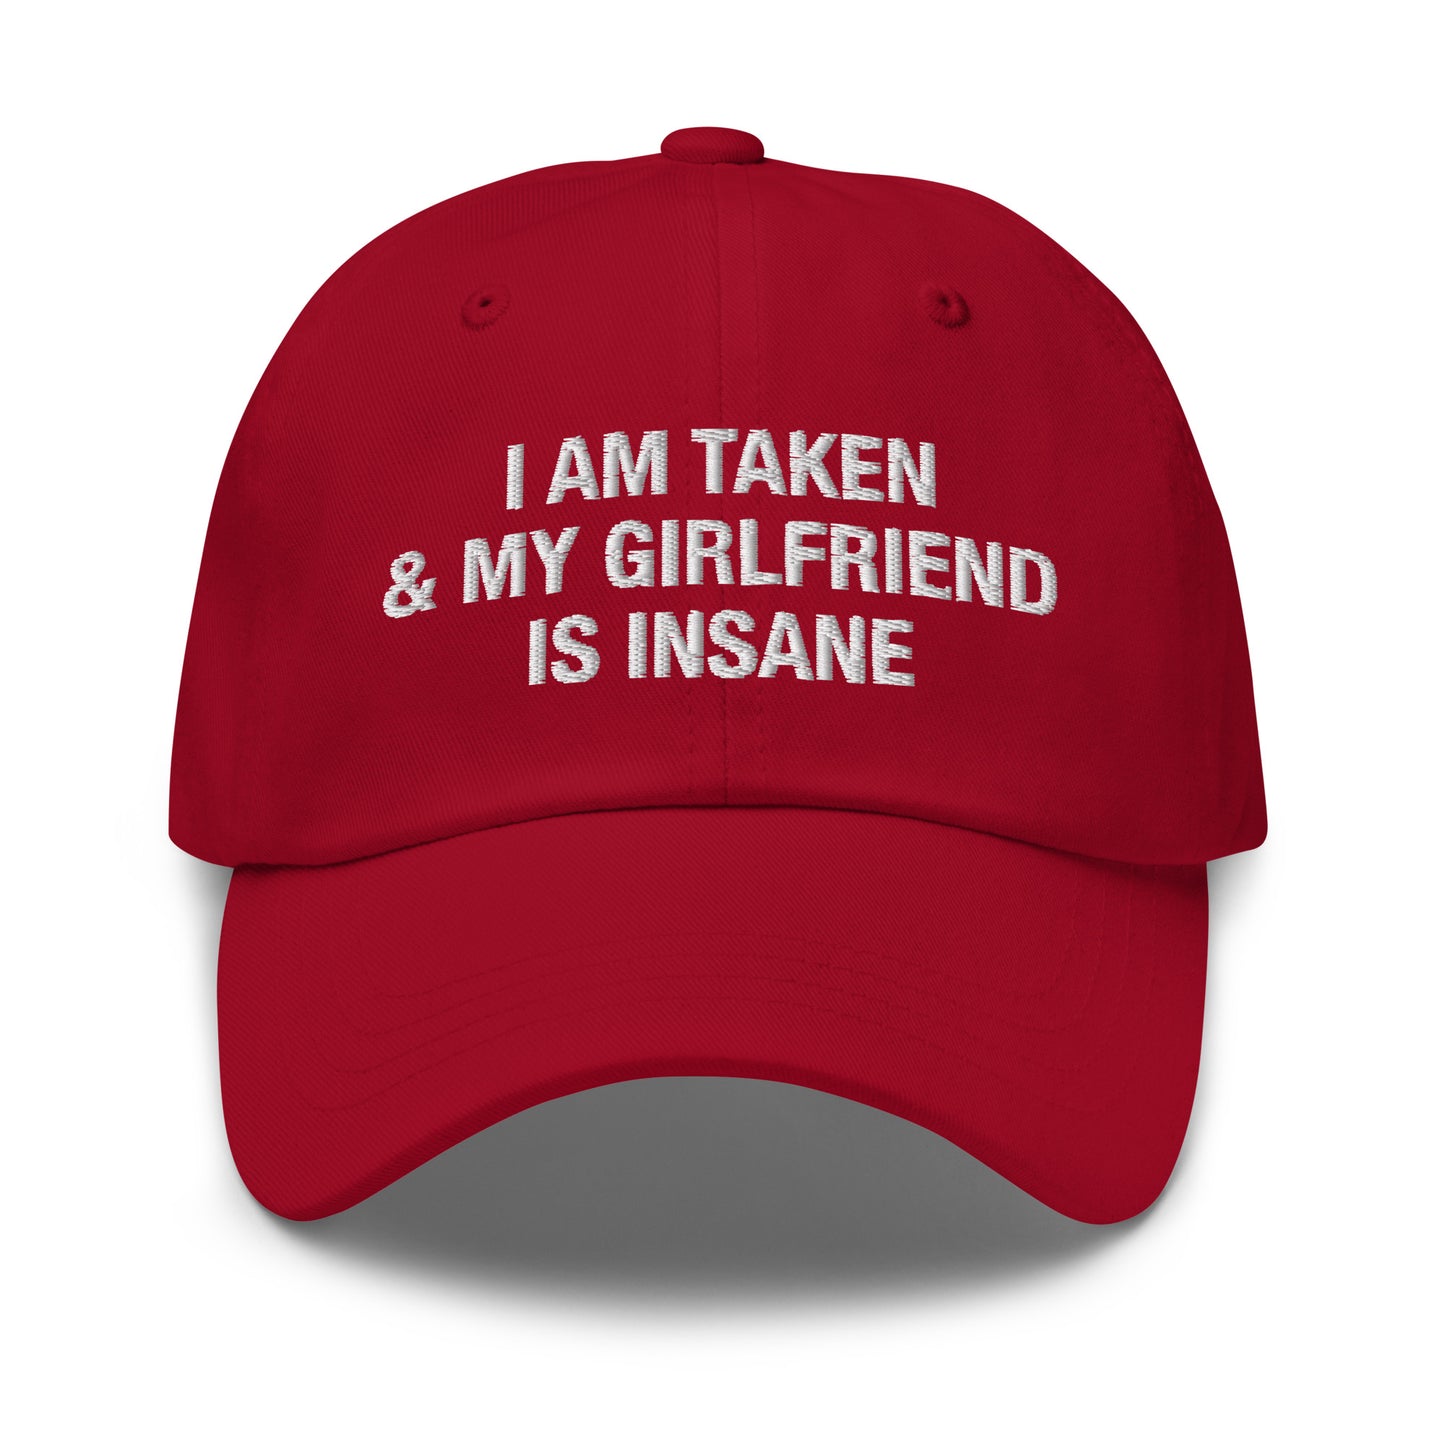 I Am Taken & My Girlfriend is Insane hat